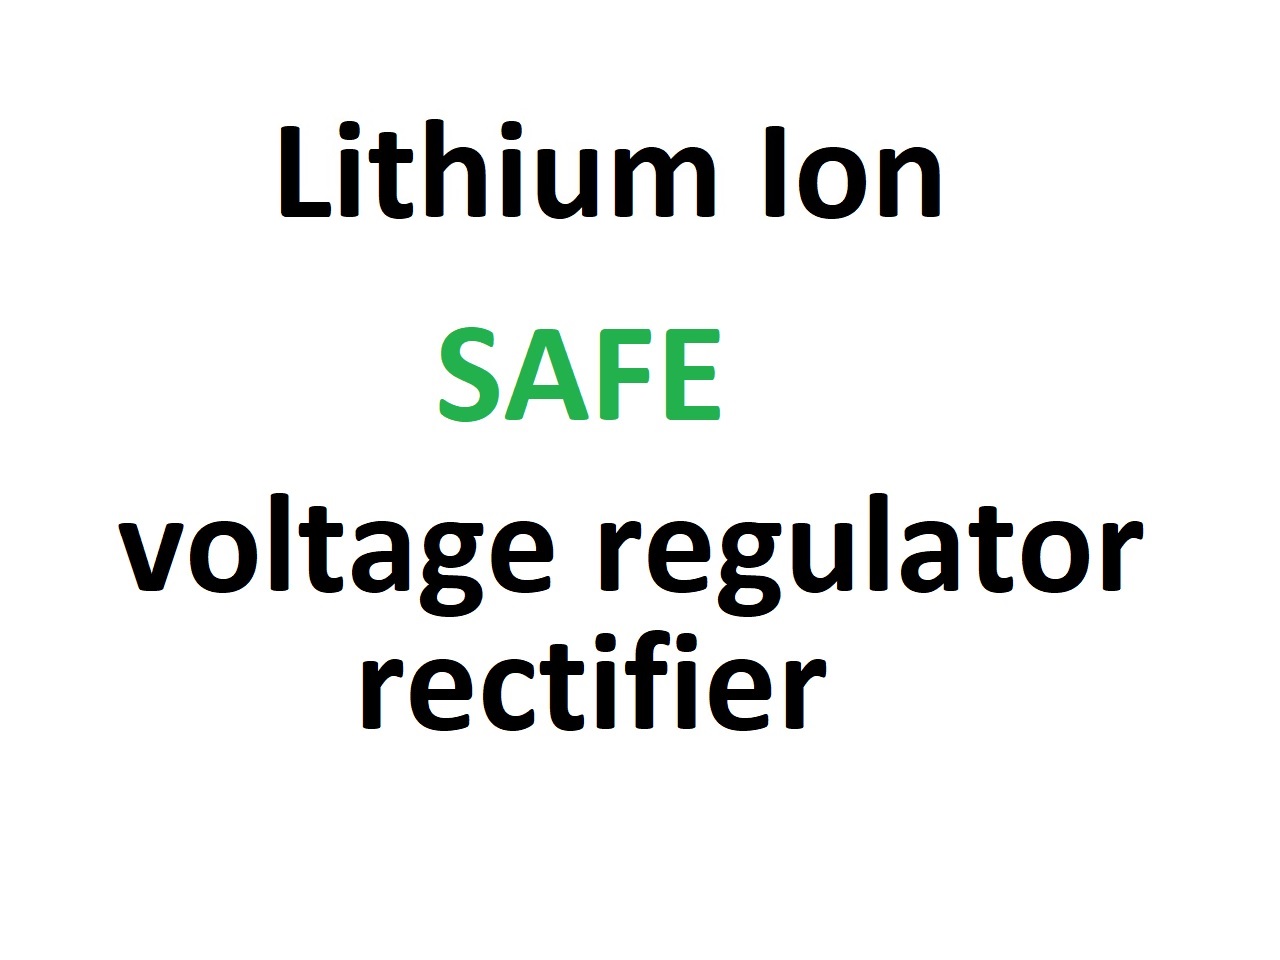 Raddrizzatore del regolatore di tensione, adatto per batterie agli ioni di litio